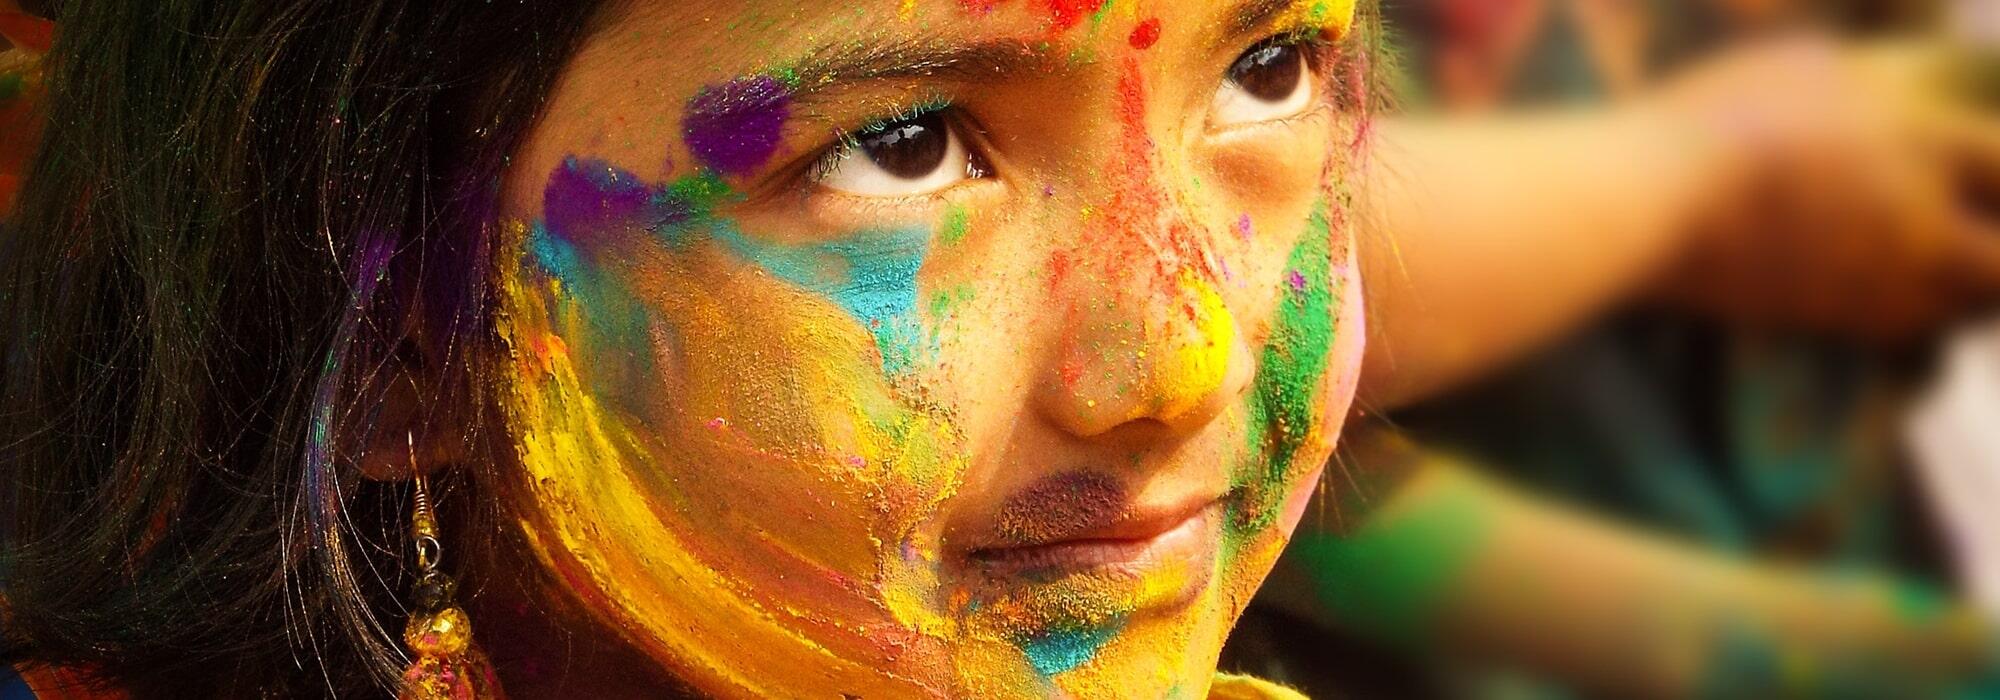 Holi, the festival of colours